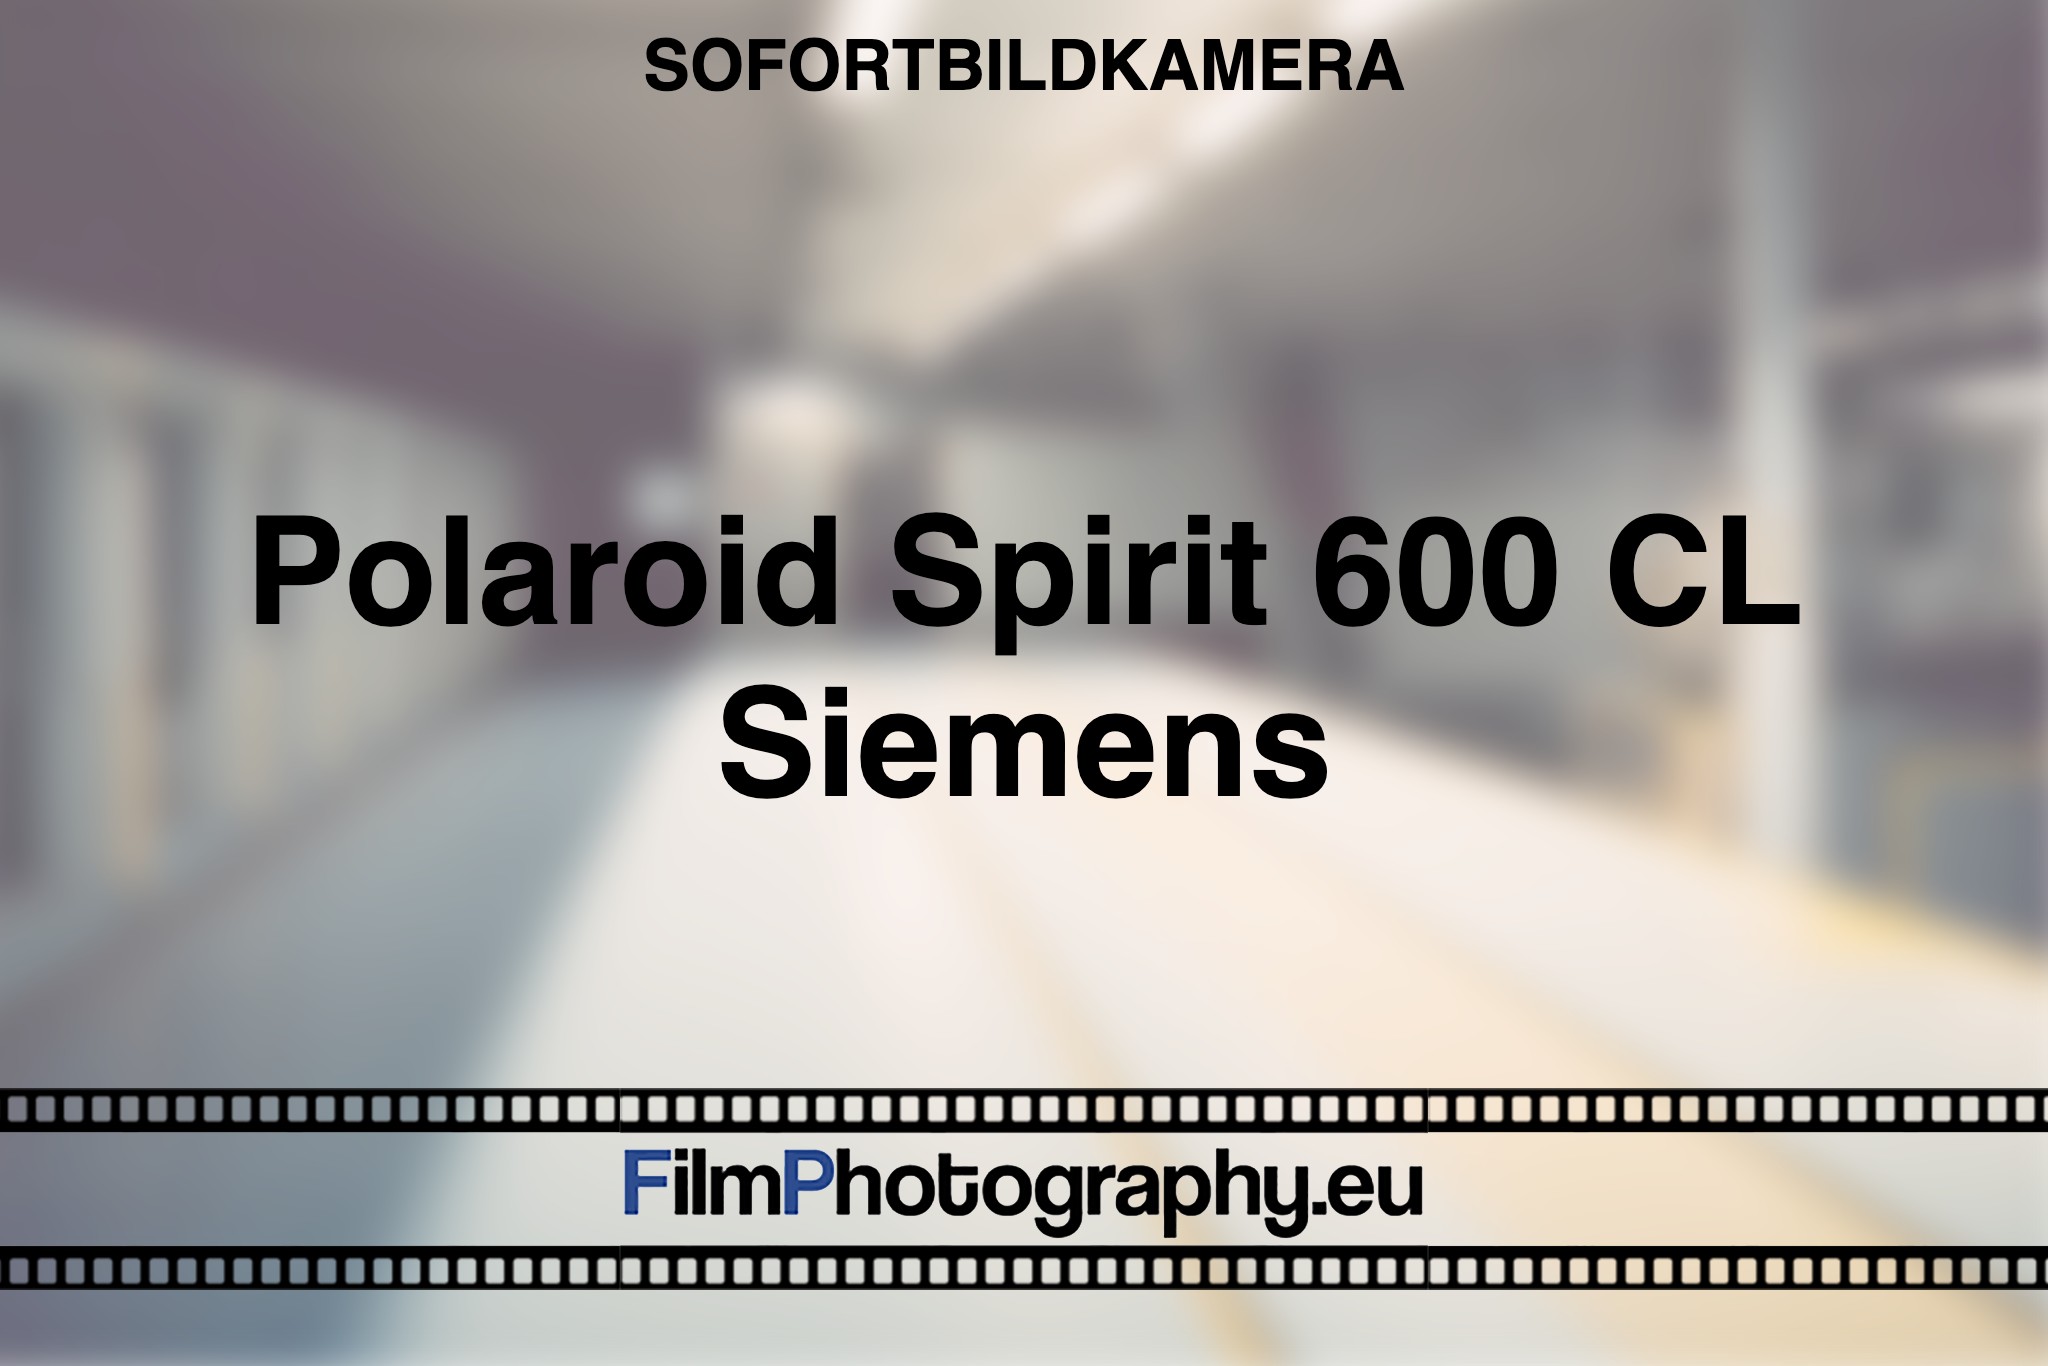 polaroid-spirit-600-cl-siemens-sofortbildkamera-fp-bnv